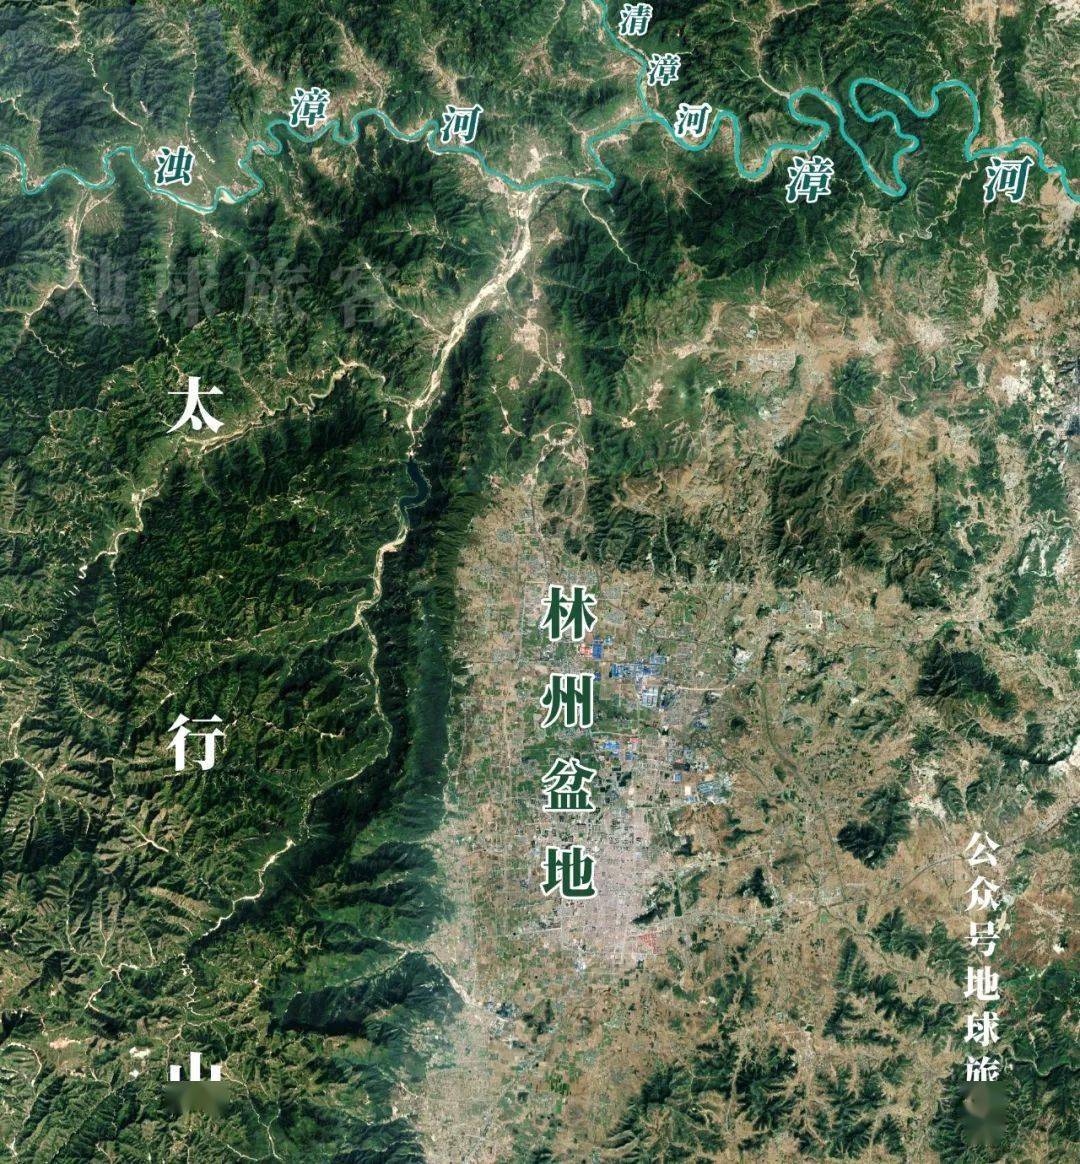 晋冀豫三省相接的省界线在河南境内形成了一个接近九十度的角,这个角